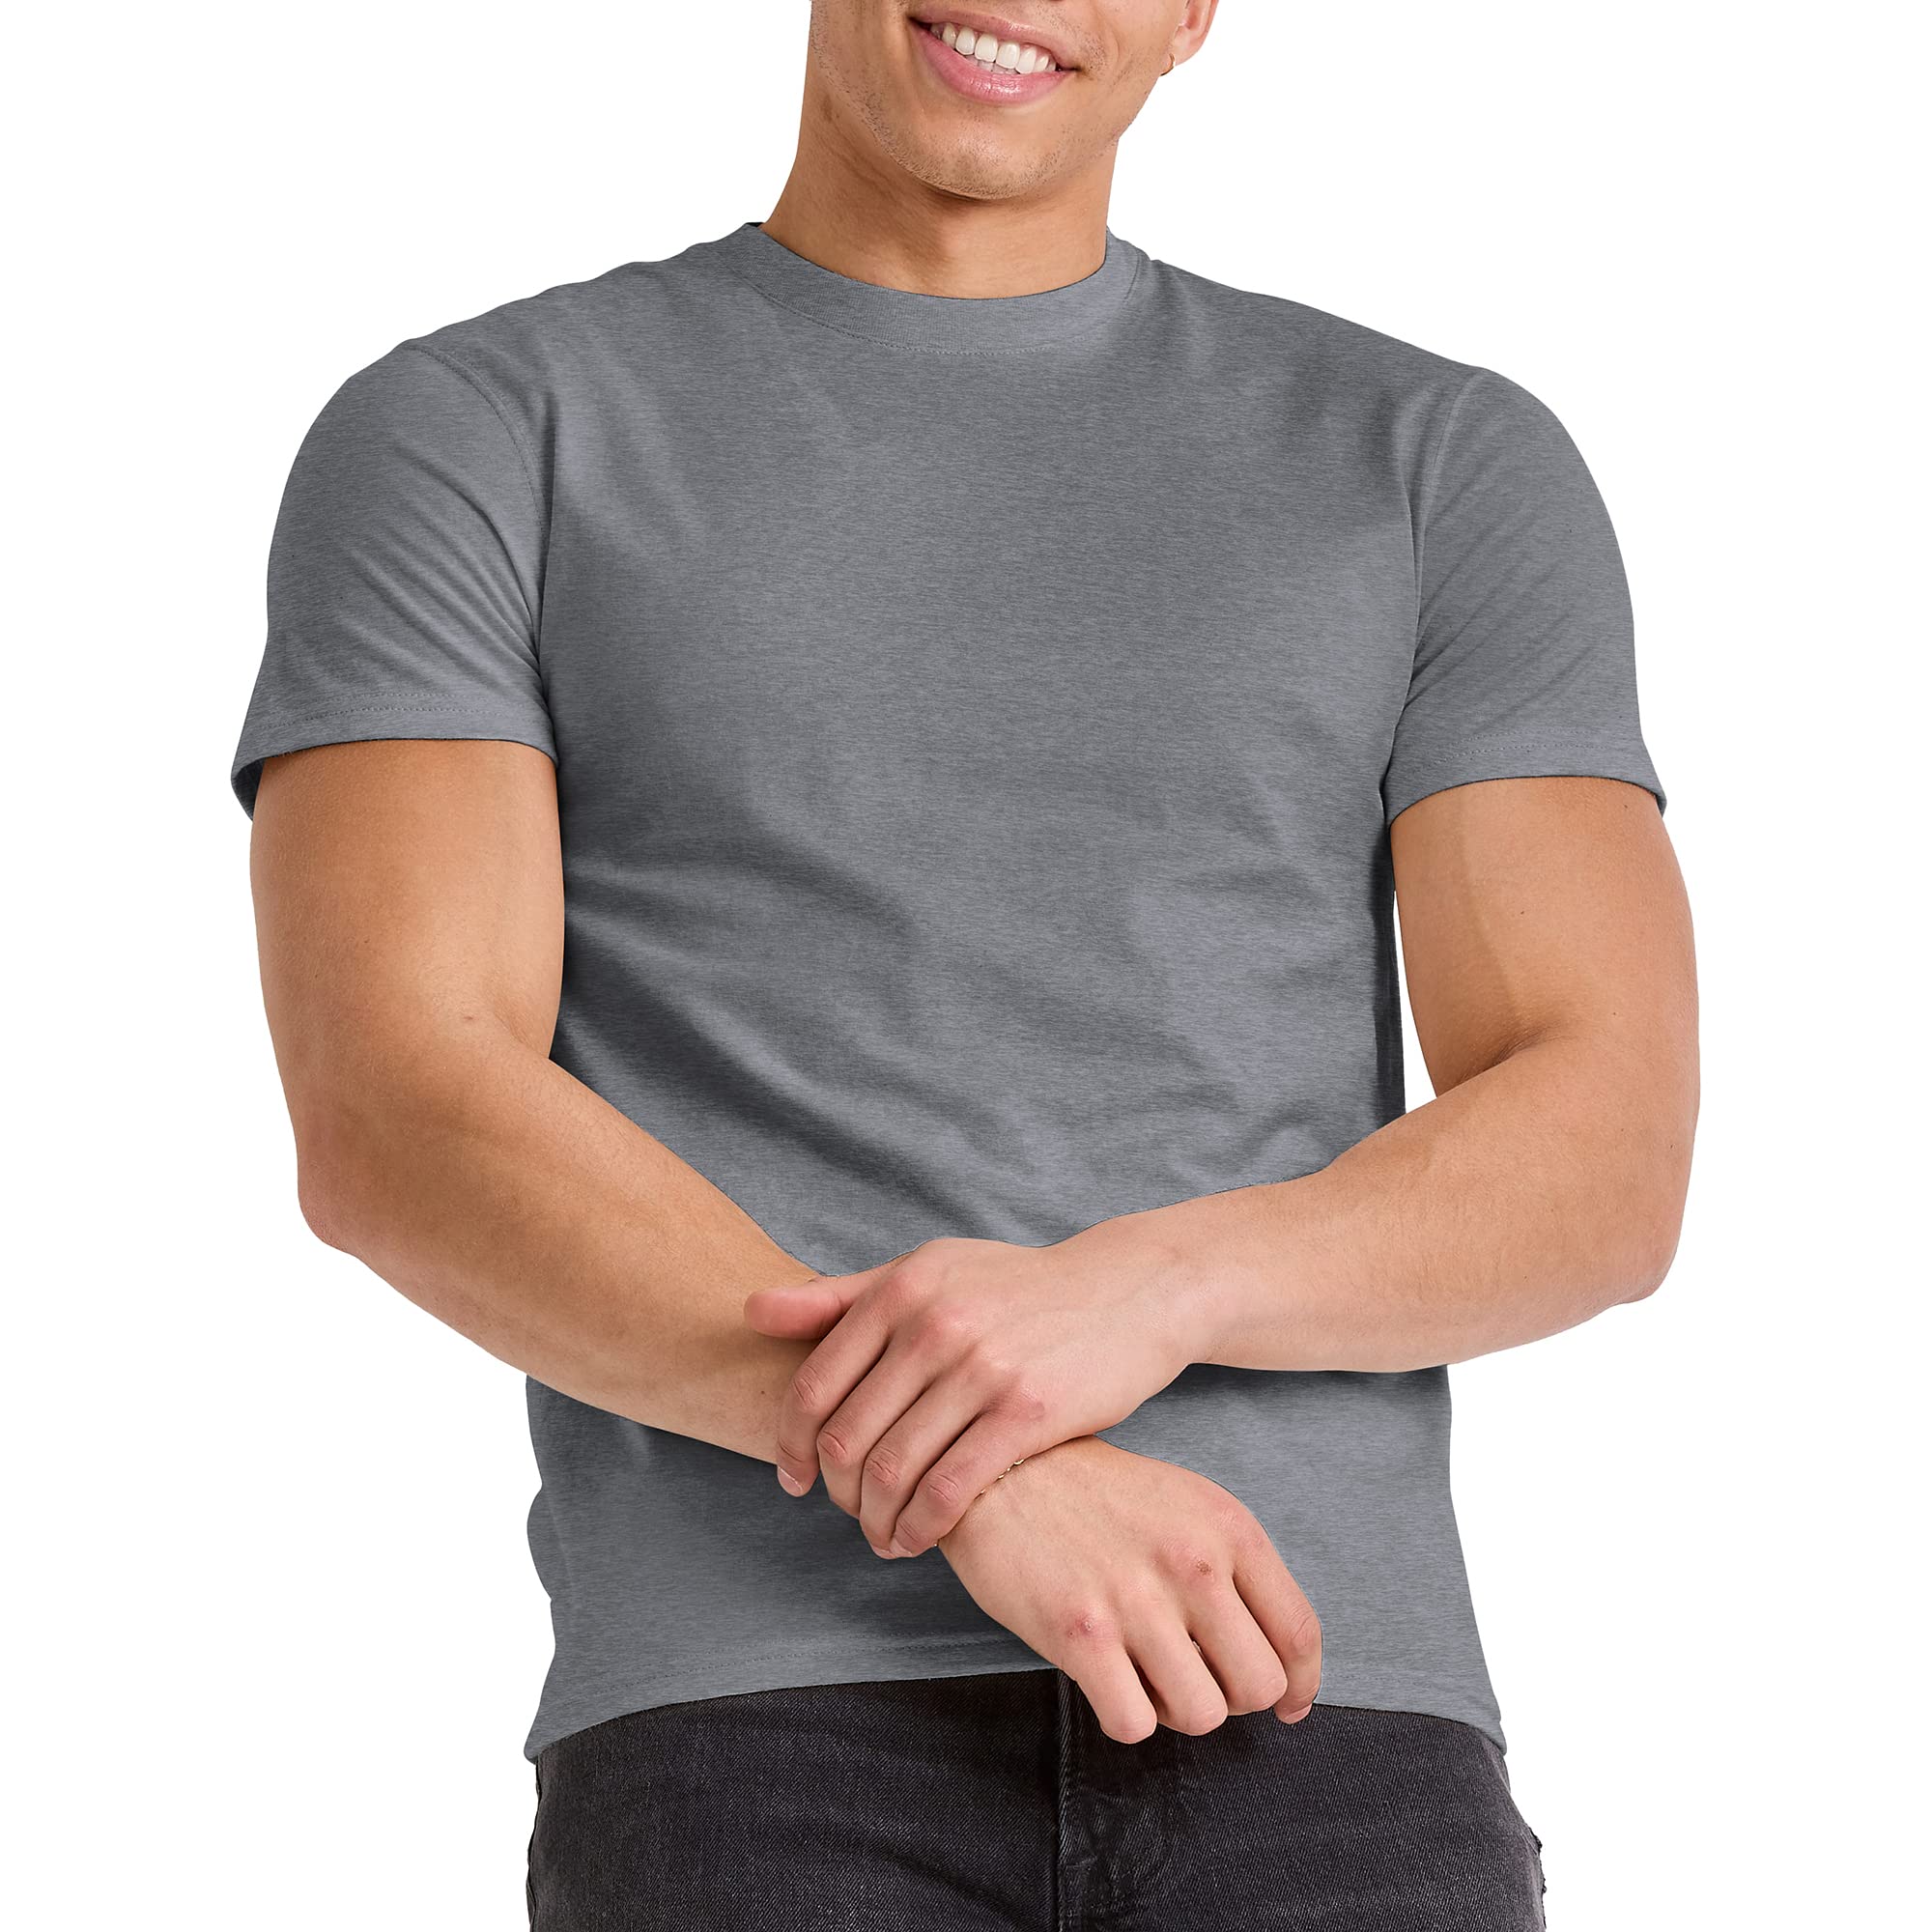 Hanes Men's Originals Lightweight Tall T-Shirt, Tri-Blend Tee, Big & Tall Sizes